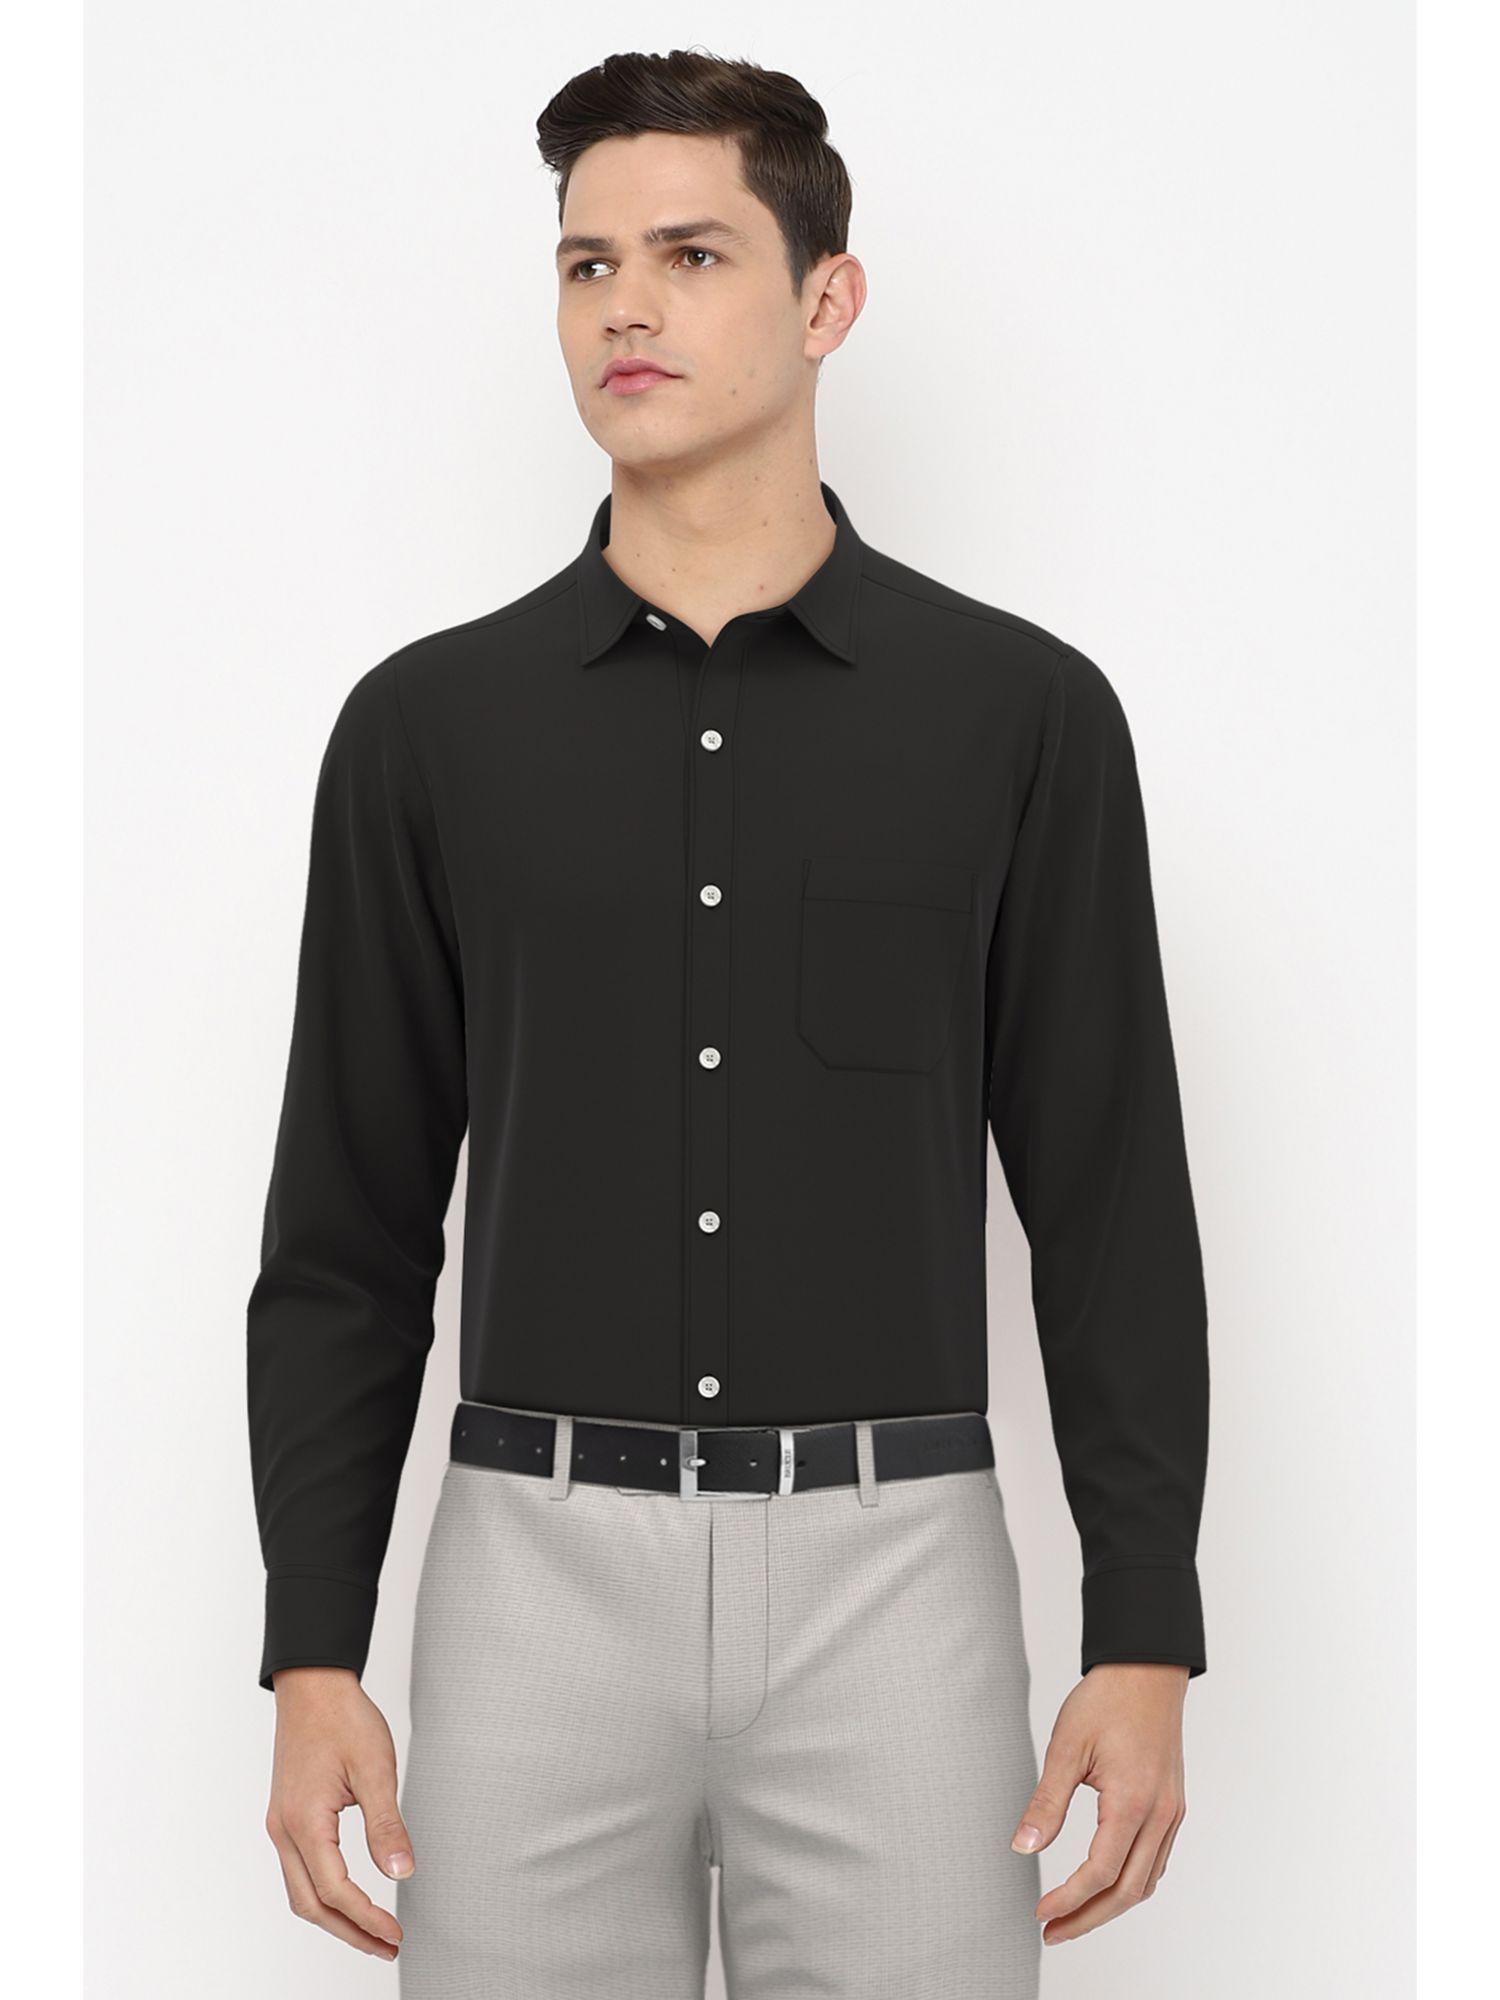 Men Black Full Sleeves Formal Shirt